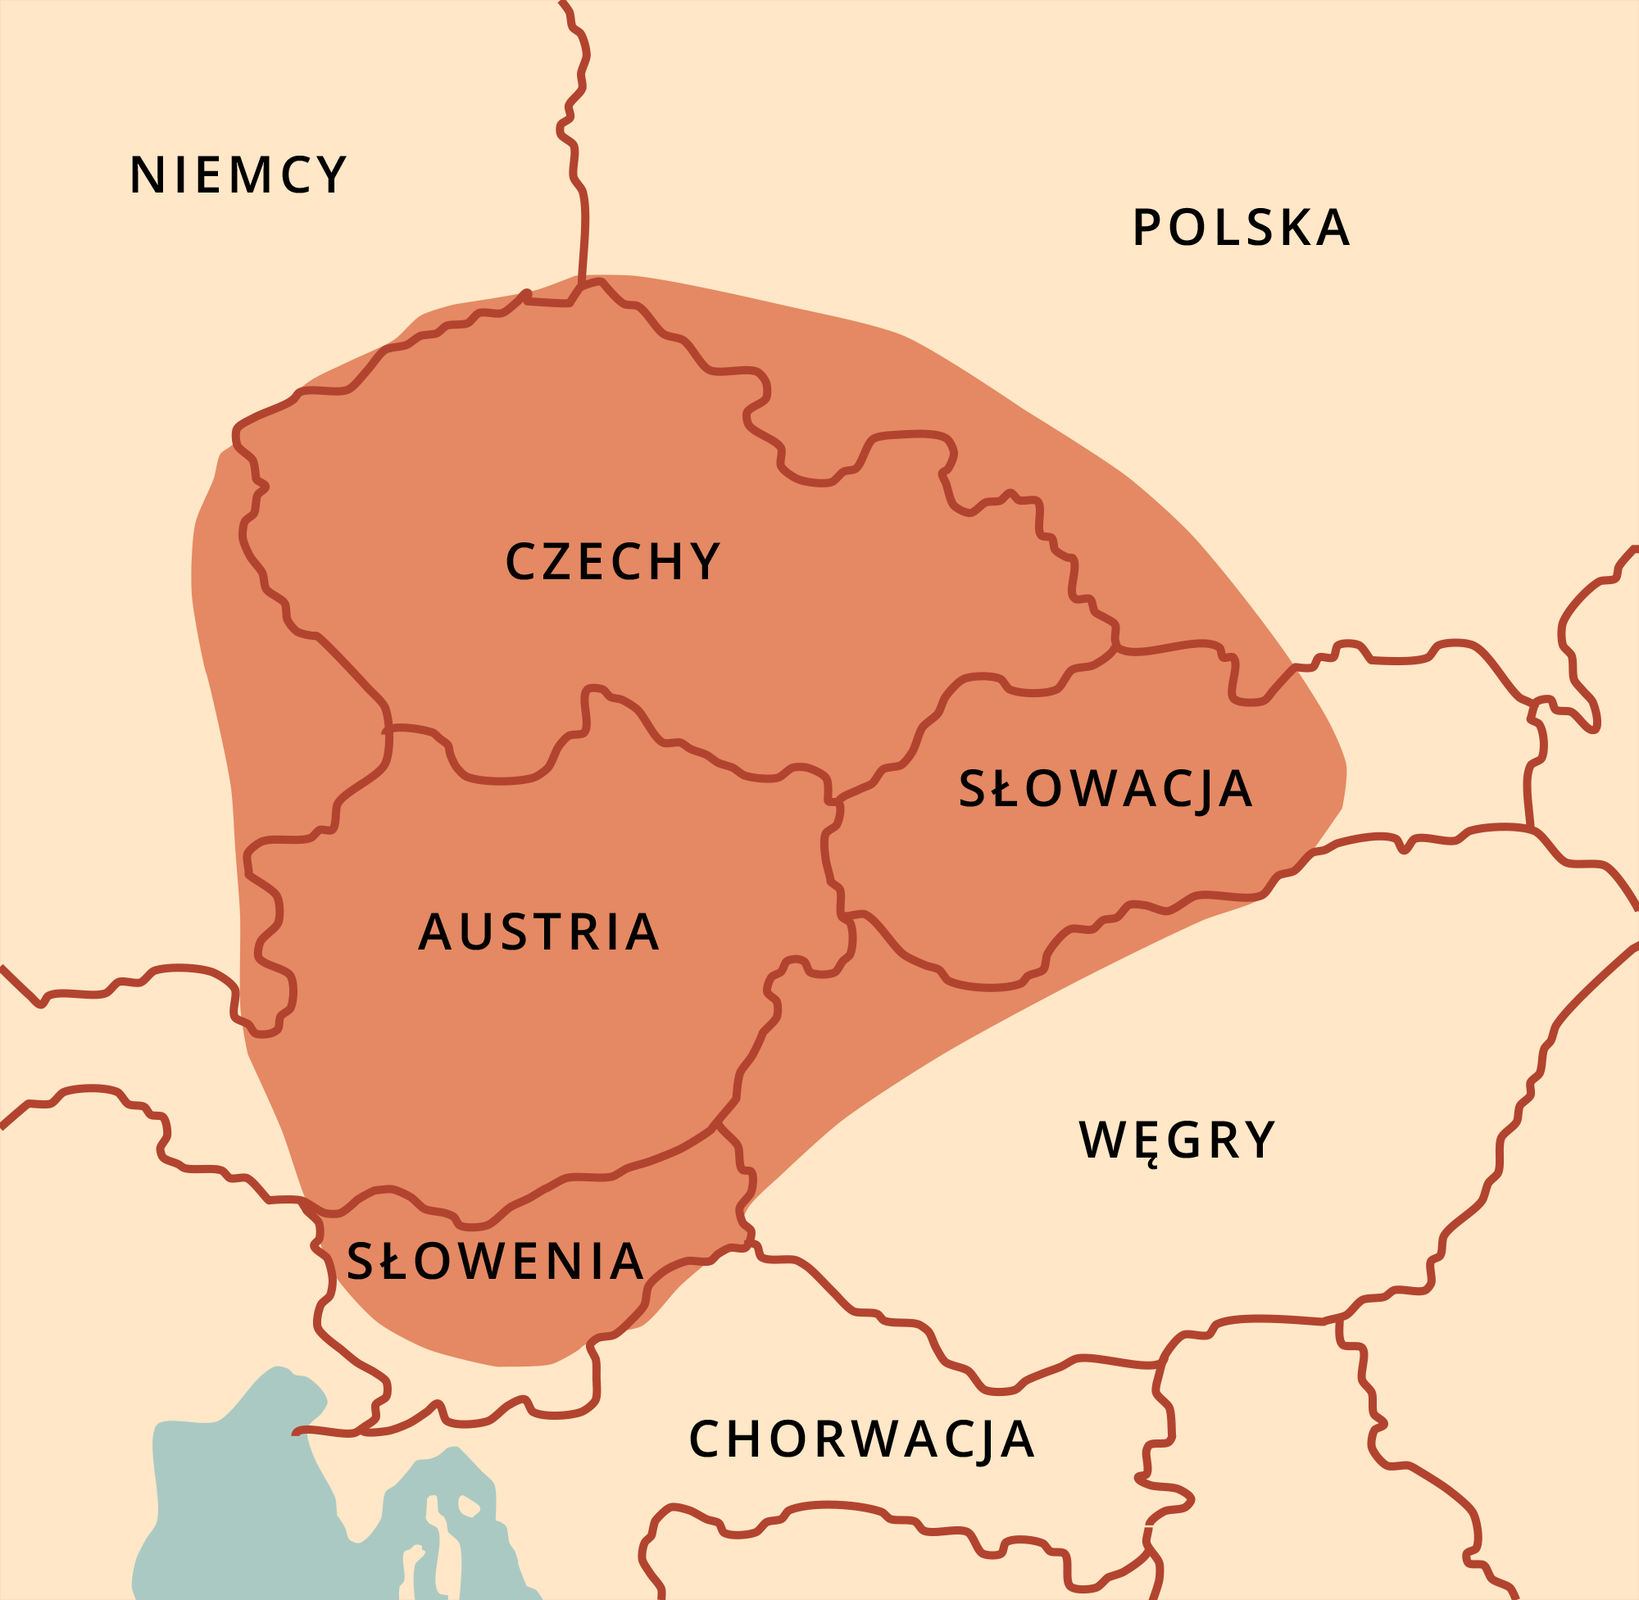 Mapa przedstawia współczesne granice centralnej Europy. Zaznaczono na niej obszar Czech, zachodniej i centralnej Słowacji, Austrii, północnej i centralnej Słowenii, północno zachodnich Węgier i południowozachodniej Polski. 